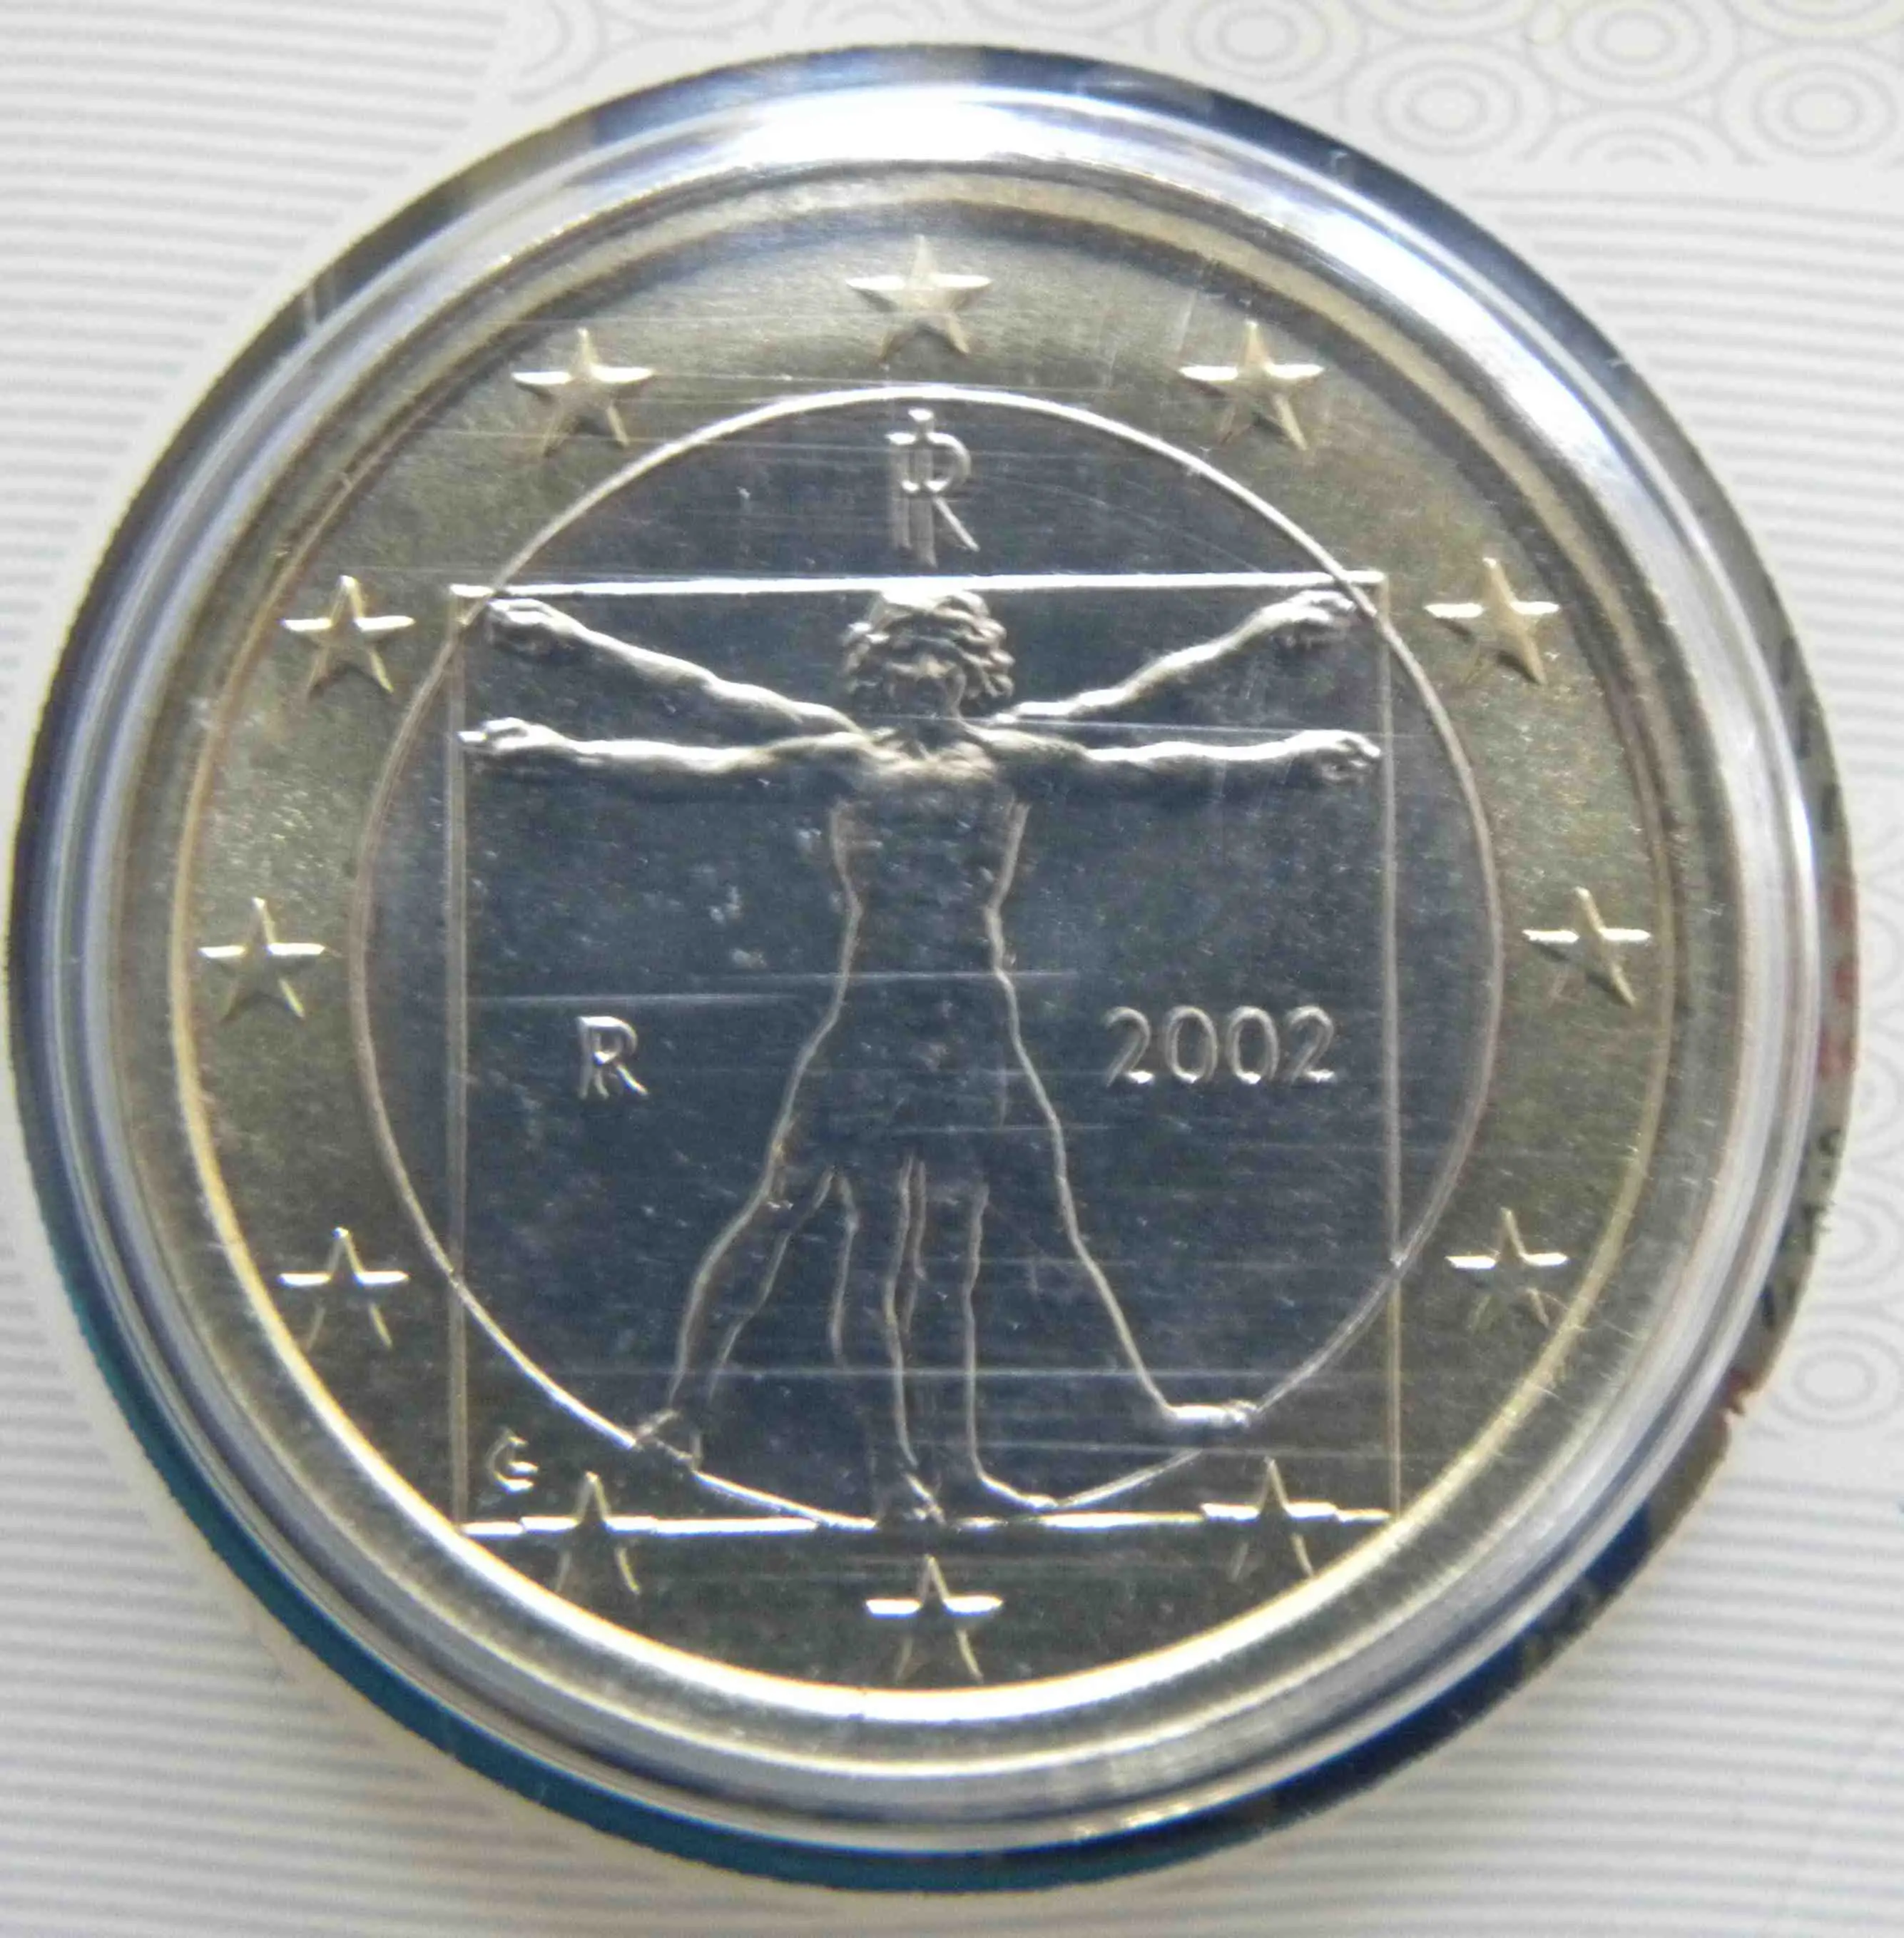 Italy 1 Euro Coin 2002  eurocoins.tv  The Online Eurocoins Catalogue